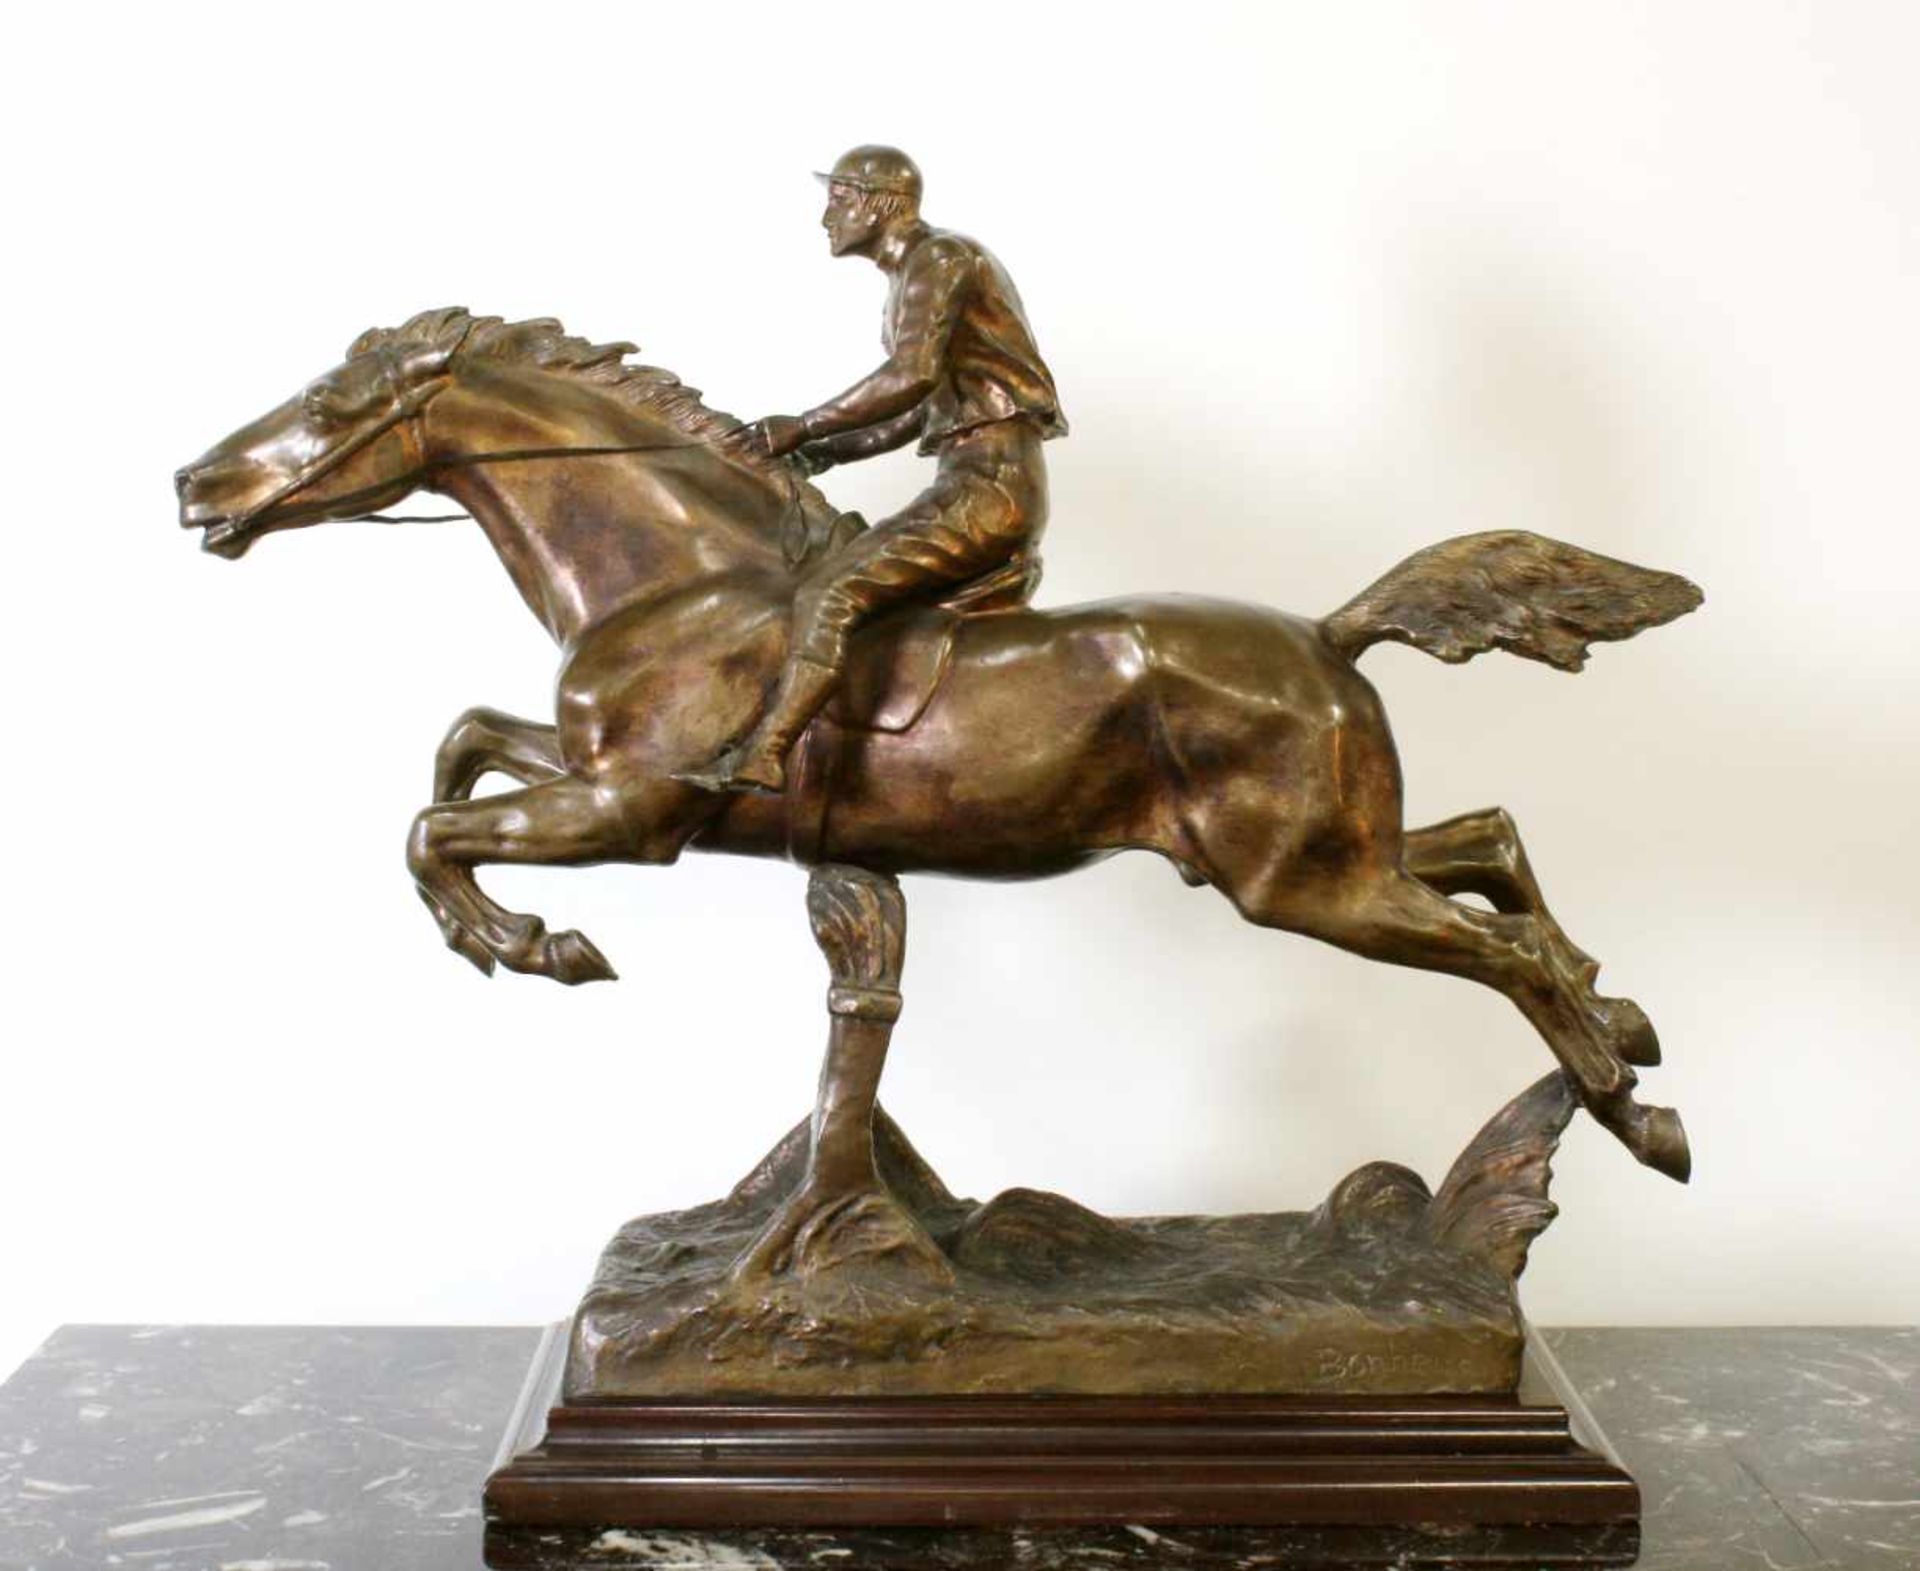 Bronzeskulptur "Jockey im Hürdenrennen" nach Isidor Jules Bonheur (1827-1901)Die Skulptur aus Bronze